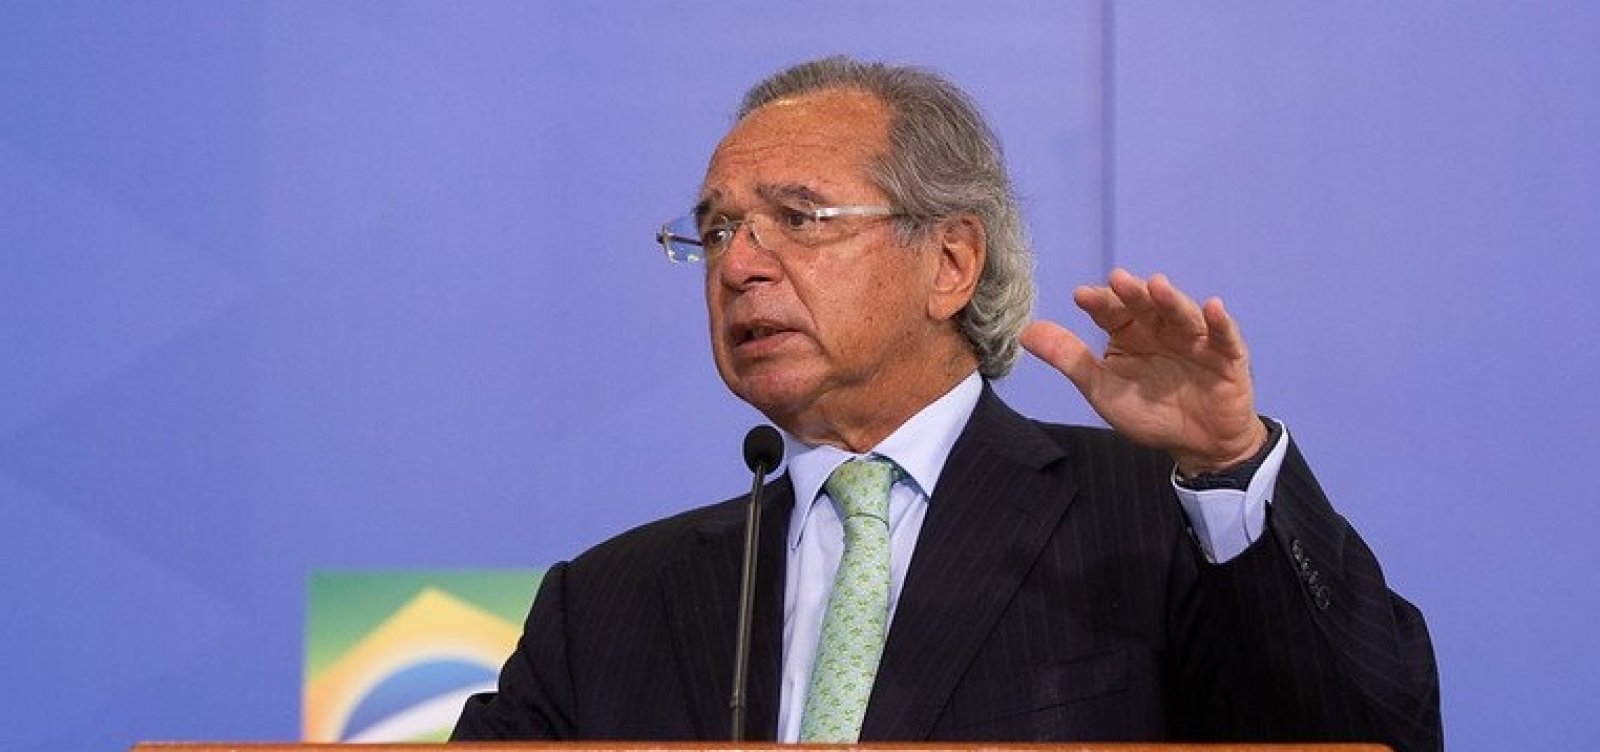 Renda Cidadã não pode ser financiado com ‘puxadinho’, afirma Guedes